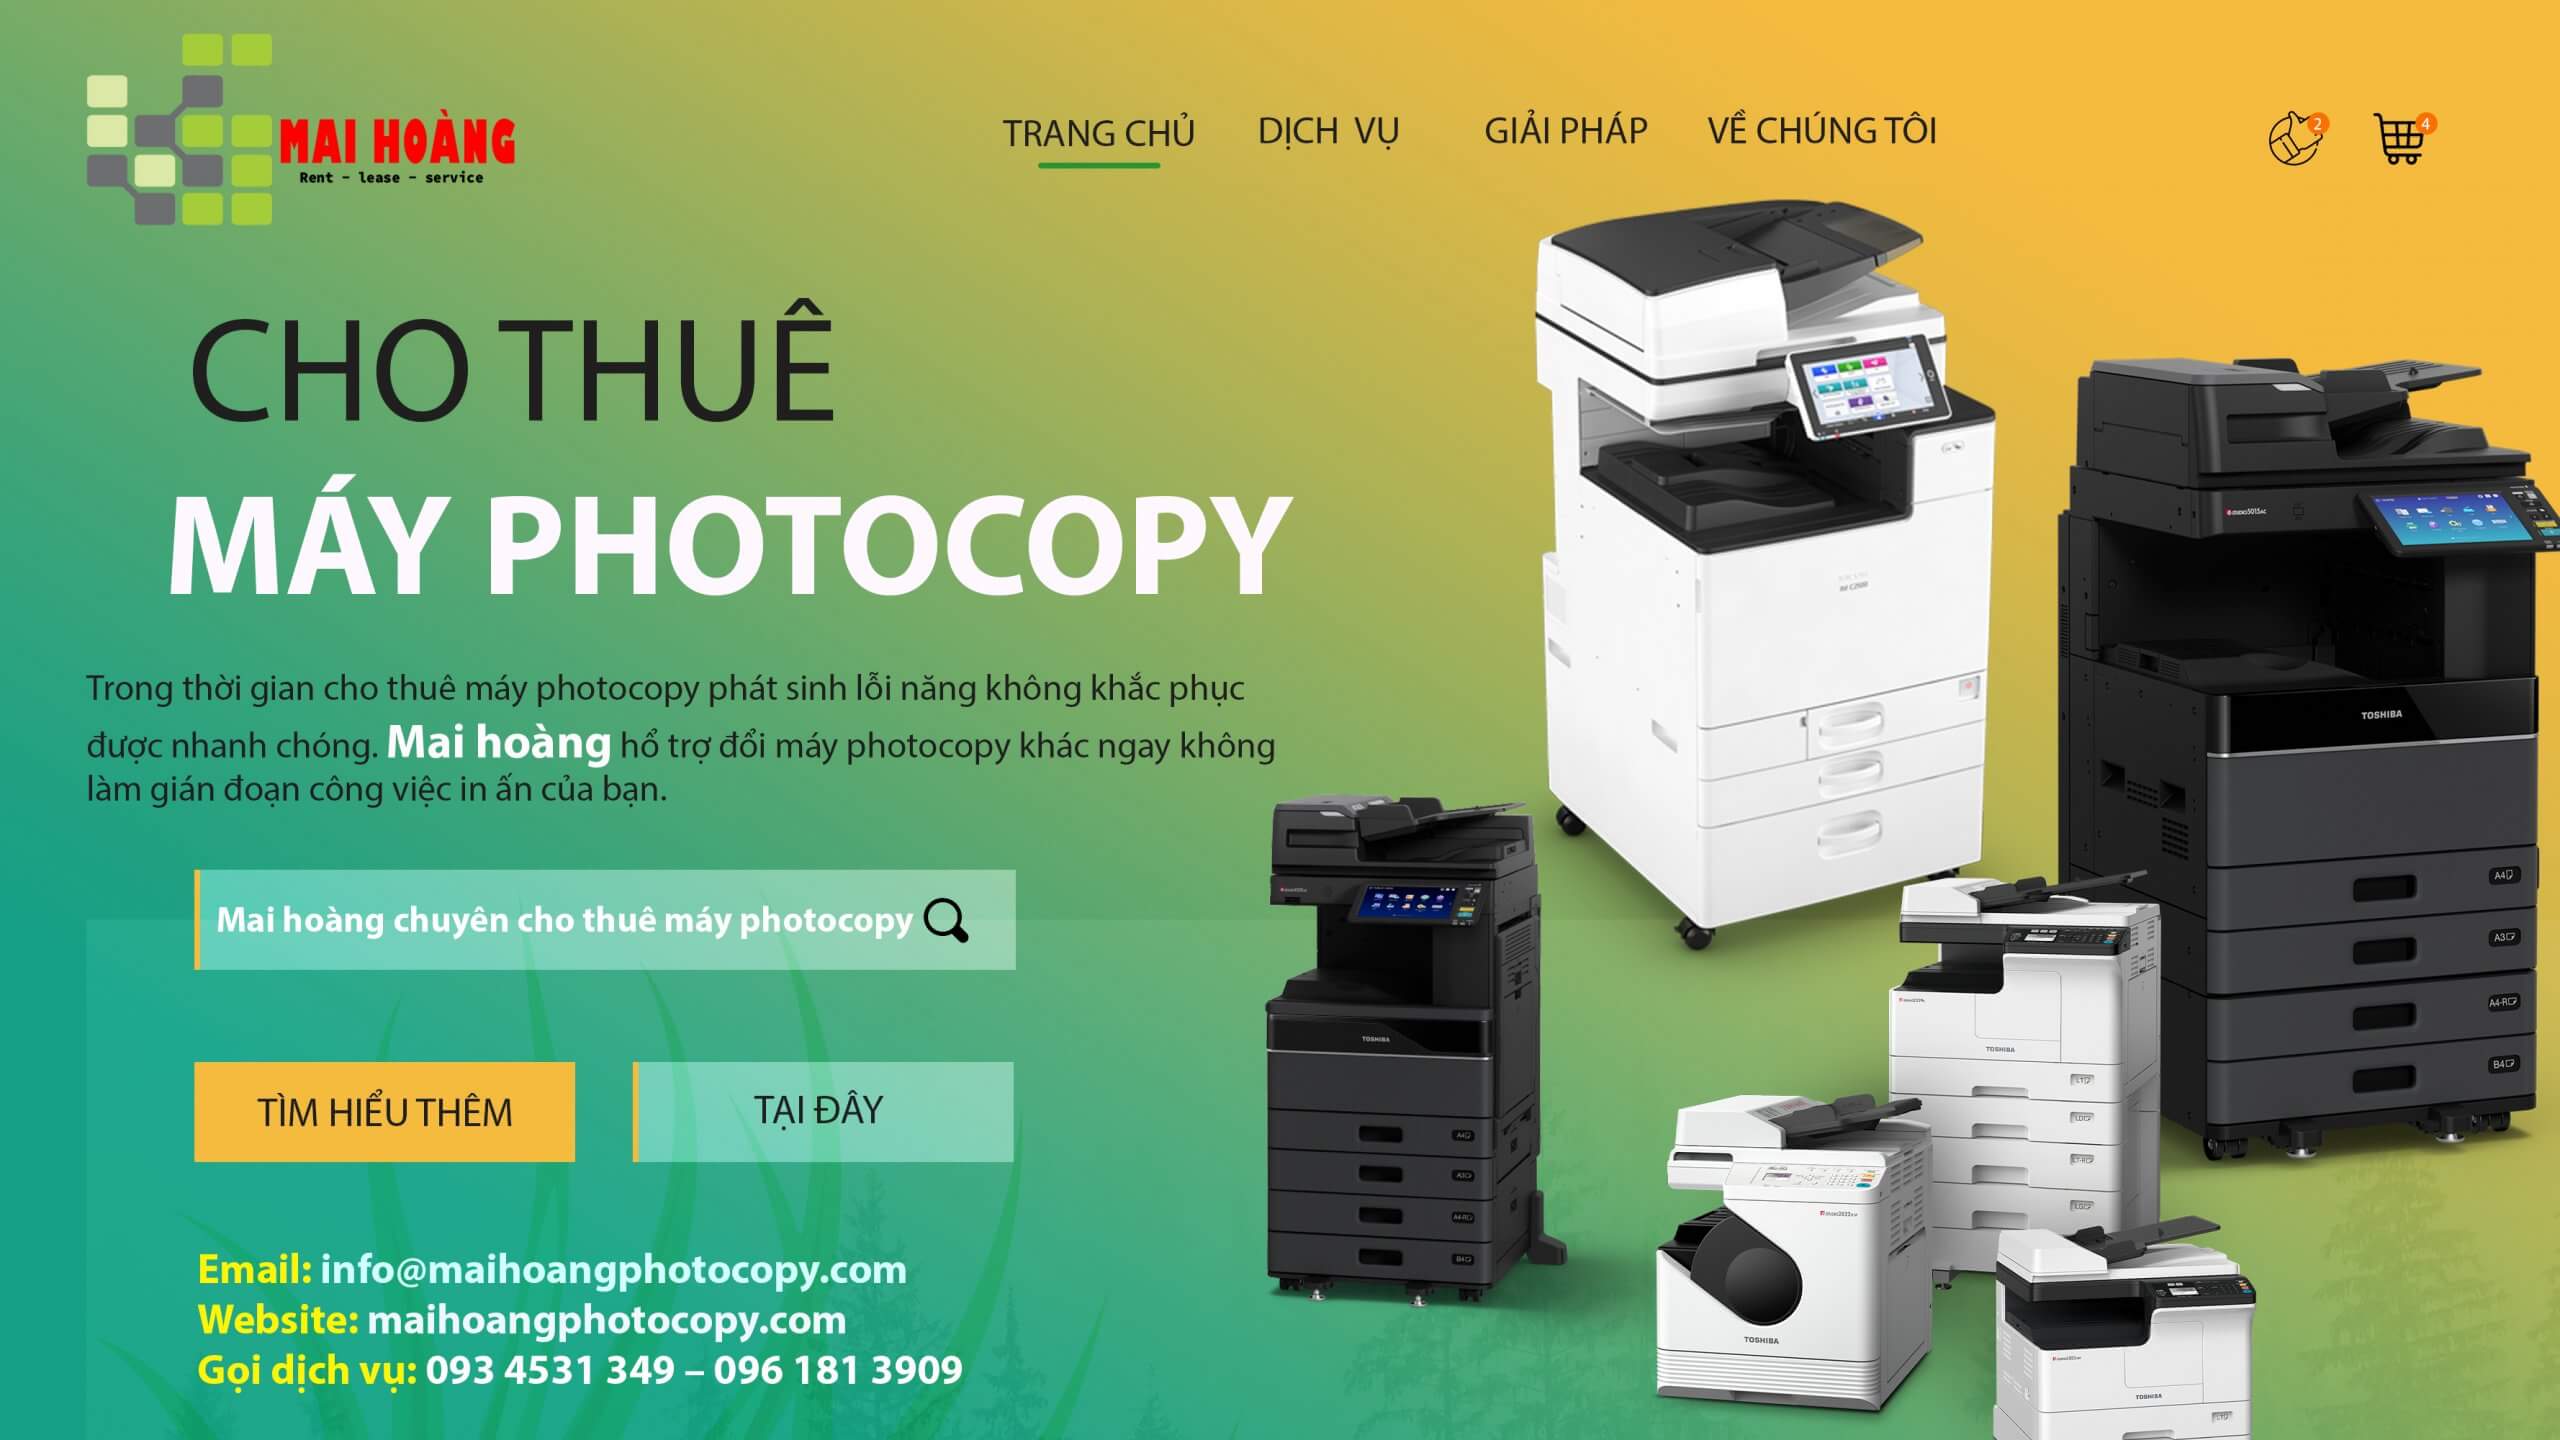 Các dòng máy photocopy của các dịch vụ cho thuê rất đa dạng, có thể kể đến như: Fuji Xerox, Ricoh, HP, Toshiba, Konica Minolta,...Mỗi dòng máy